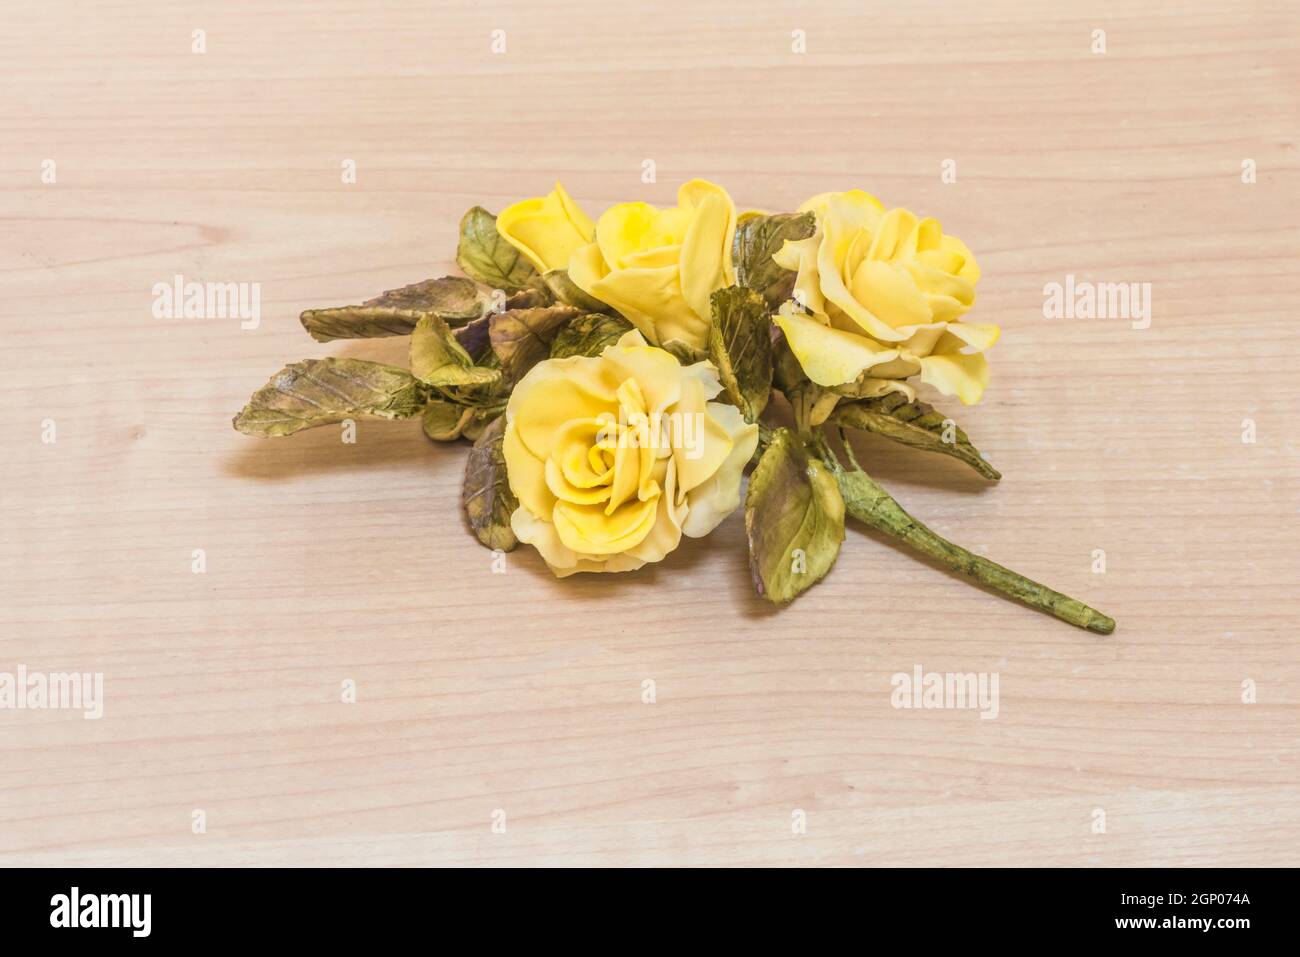 Exemple de roses jaunes et la patience nécessaire pour construire des œuvres d'art dans l'art de l'artisanat du sucre. Tout ce que vous voyez a été fait à la main. Banque D'Images